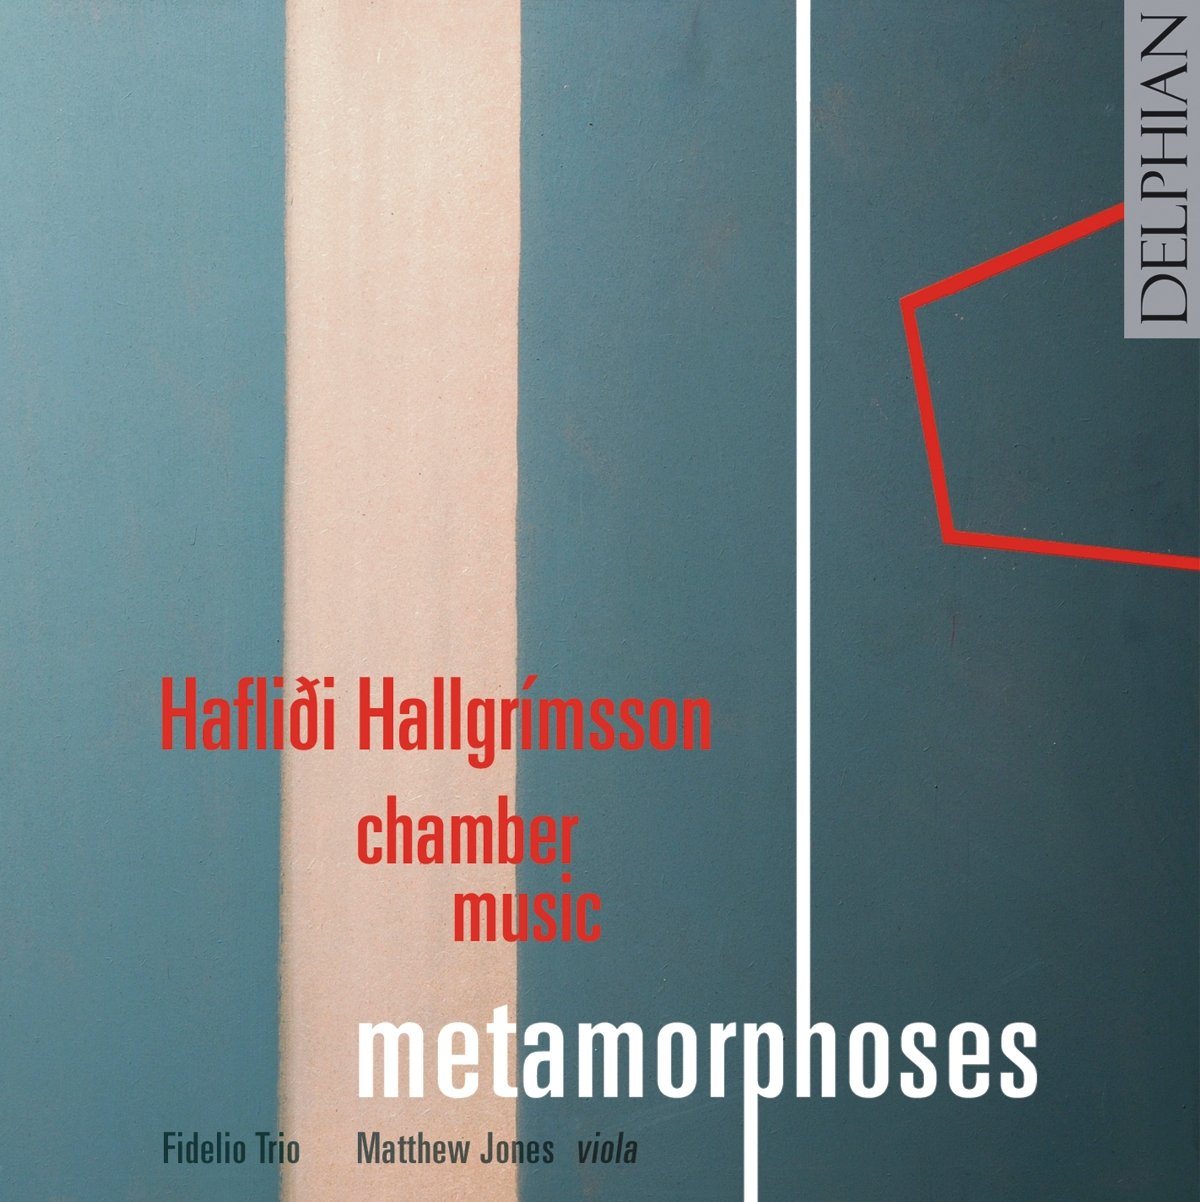 Hafliði Hallgrímsson: Metamorphoses